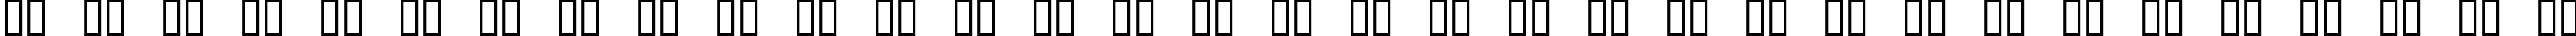 Пример написания русского алфавита шрифтом 50 Fonts 2